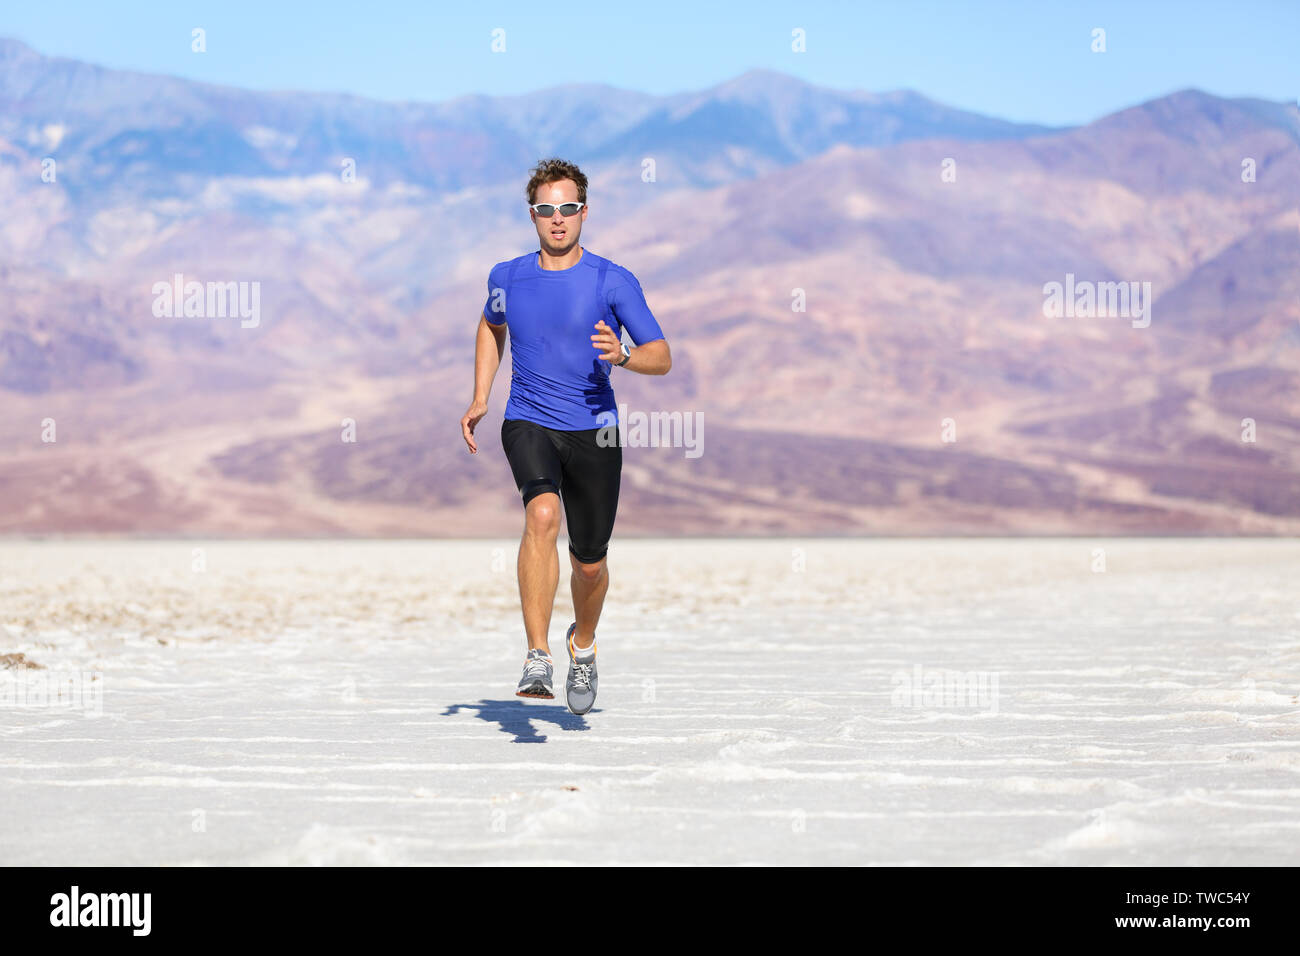 Laufender Mann-sprinten Sportler Läufer in die Wüste. Fit athletische Männlich fitness Modell in schnellen Sprint mit großer Geschwindigkeit in Richtung Kamera. Sport in erstaunlichen extreme Landschaft der Wüste. Stockfoto